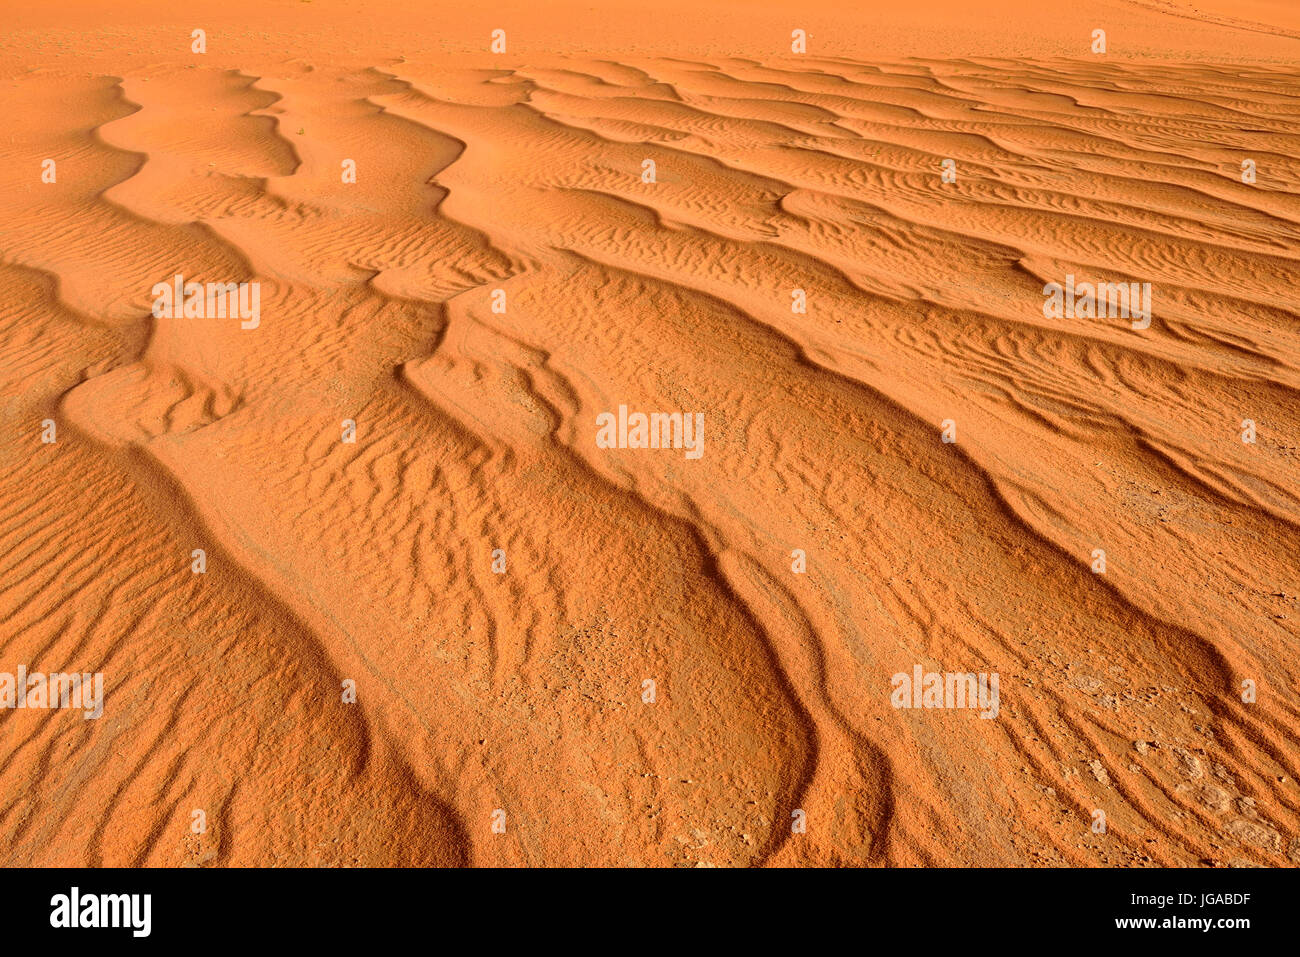 Sand ripples on sand dunes, Tassili n'Ajjer National Park, UNESCO World Heritage Site, Sahara desert, Algeria Stock Photo